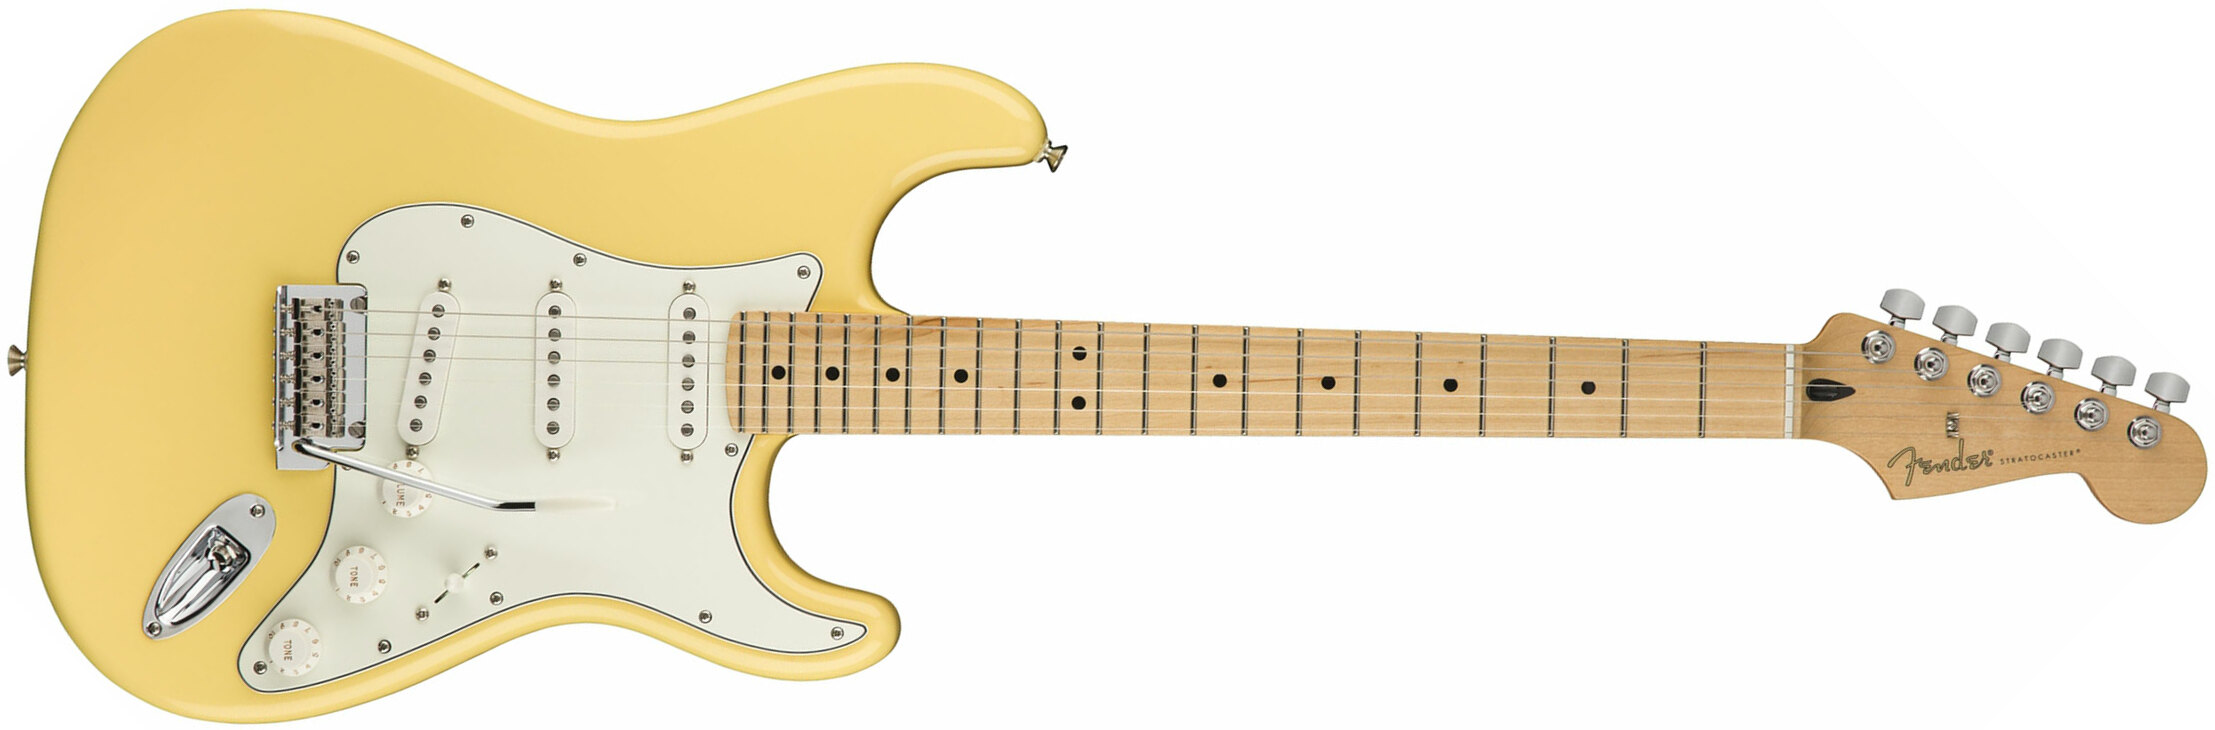 Fender Strat Player Mex Sss Mn - Buttercream - E-Gitarre in Str-Form - Main picture